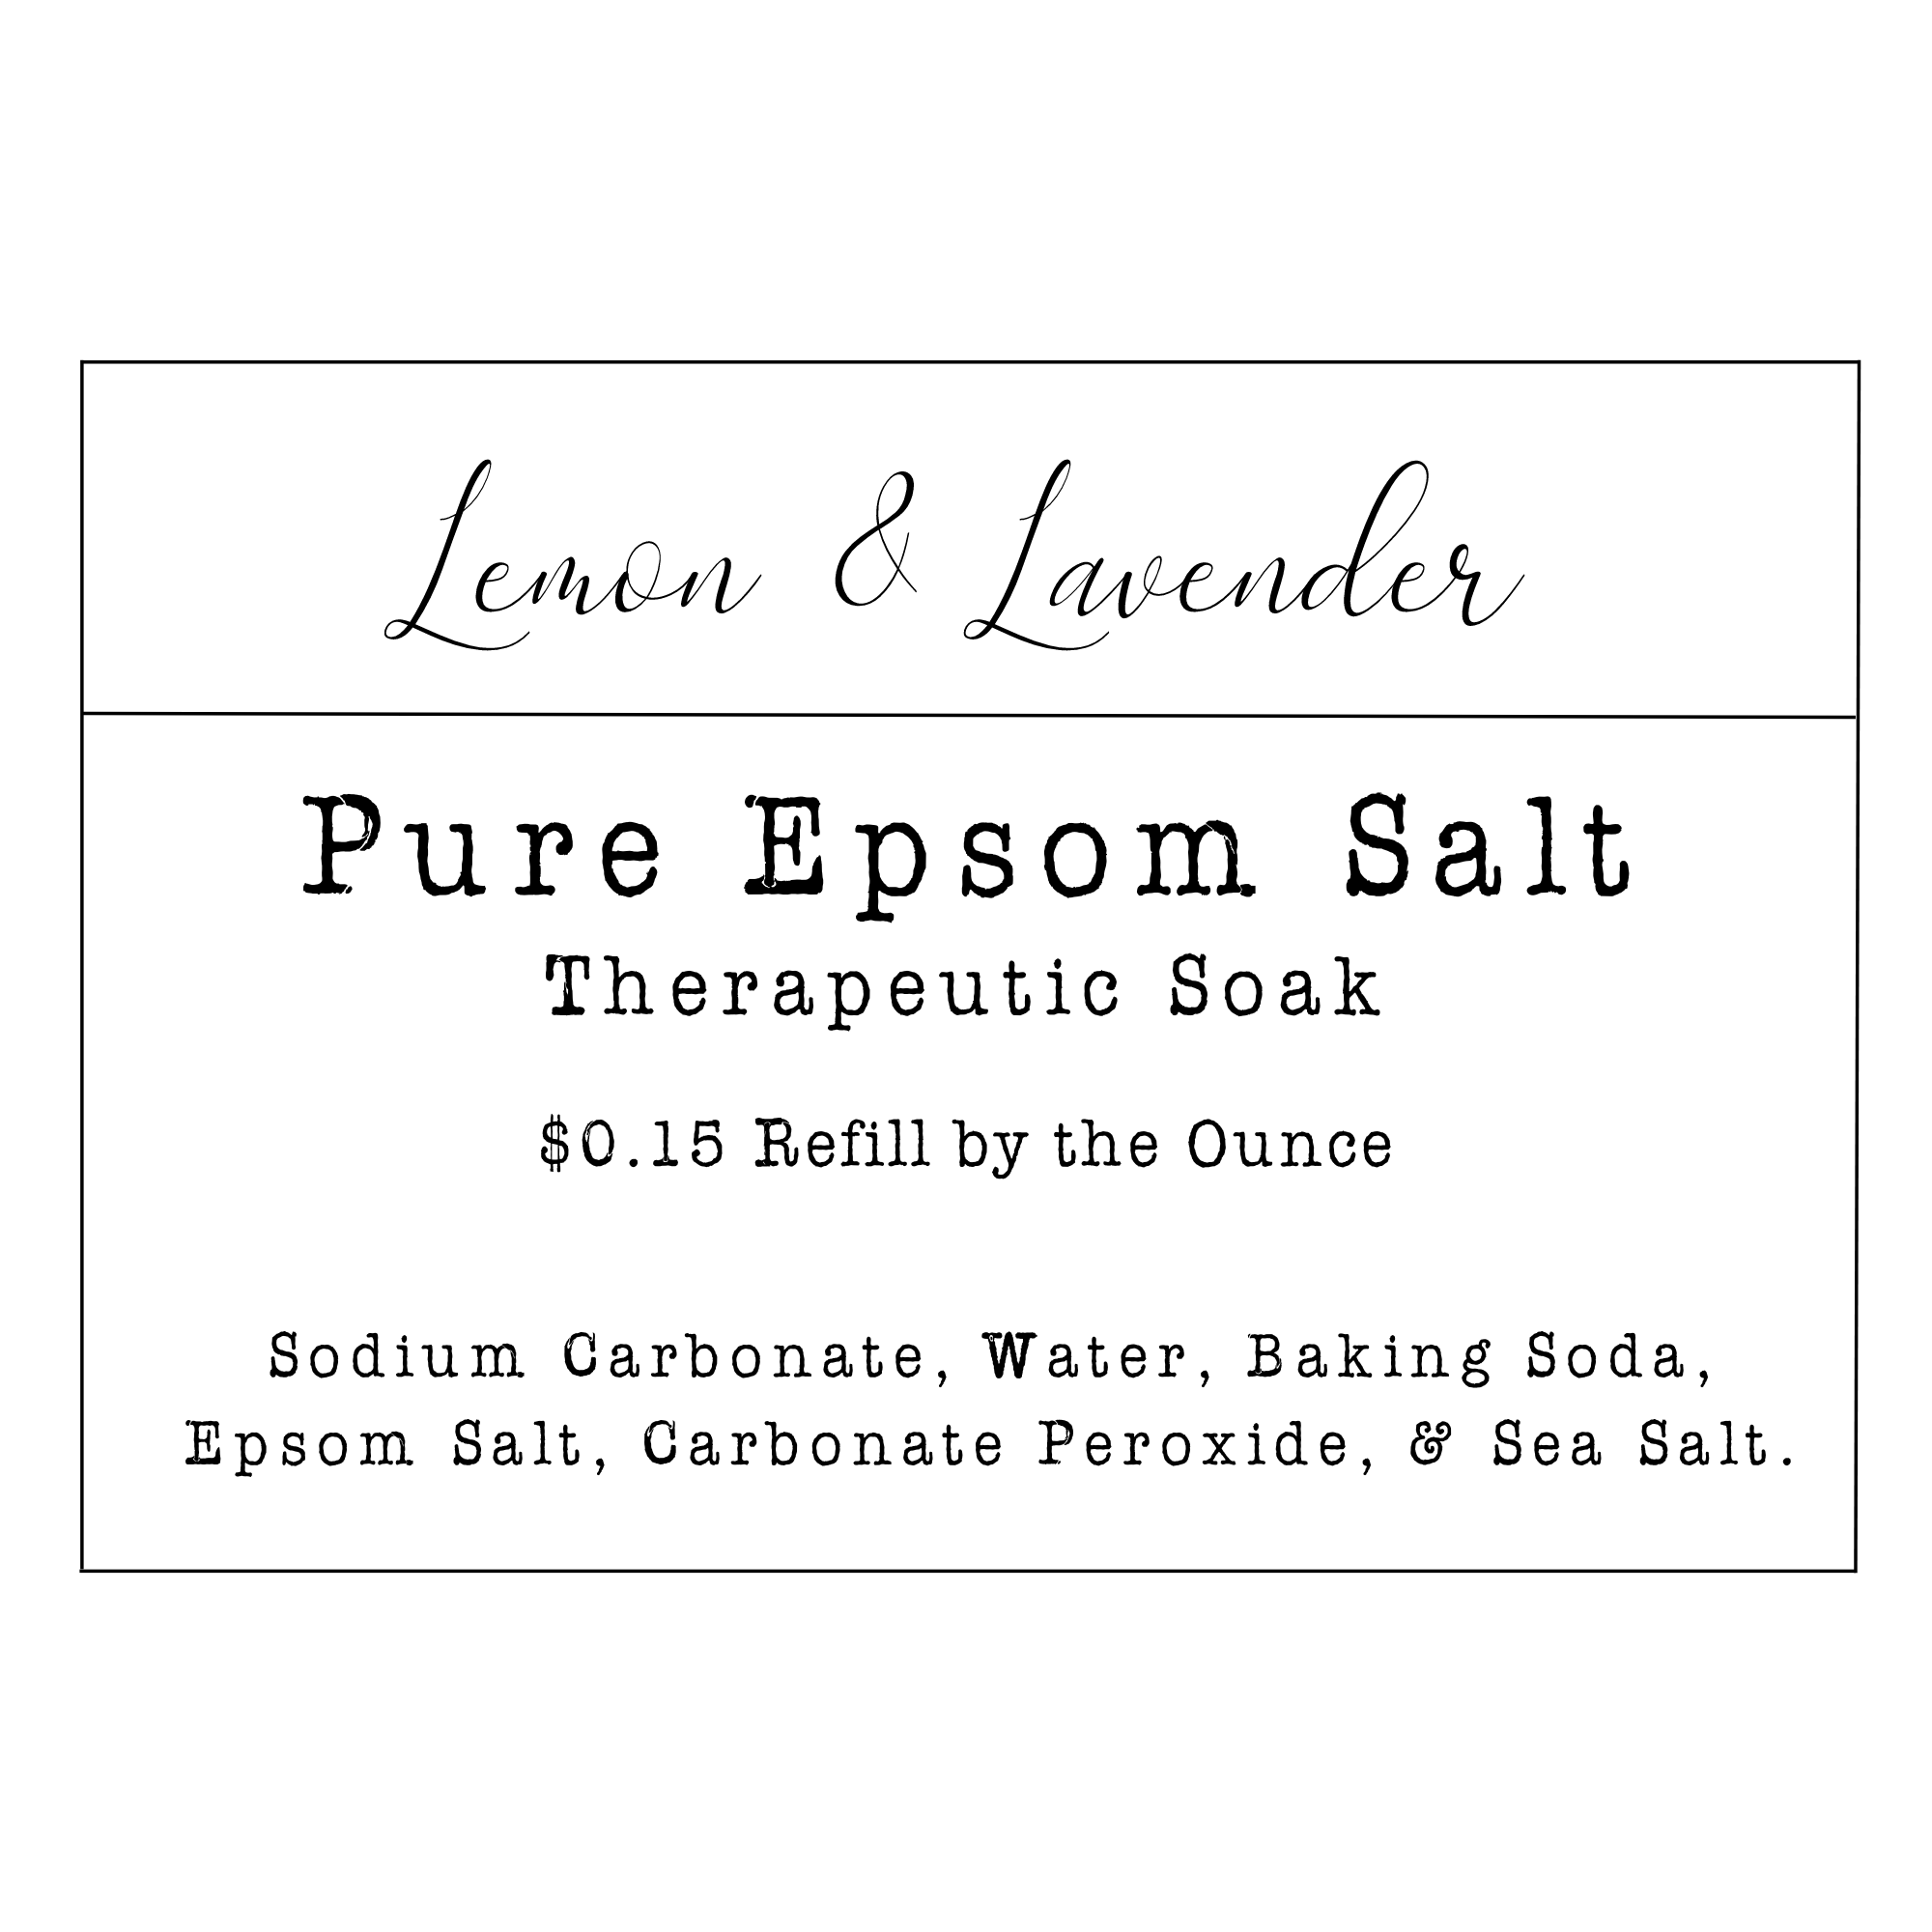 Refill by Ounce- Pure Epsom Salt - Lemon & Lavender